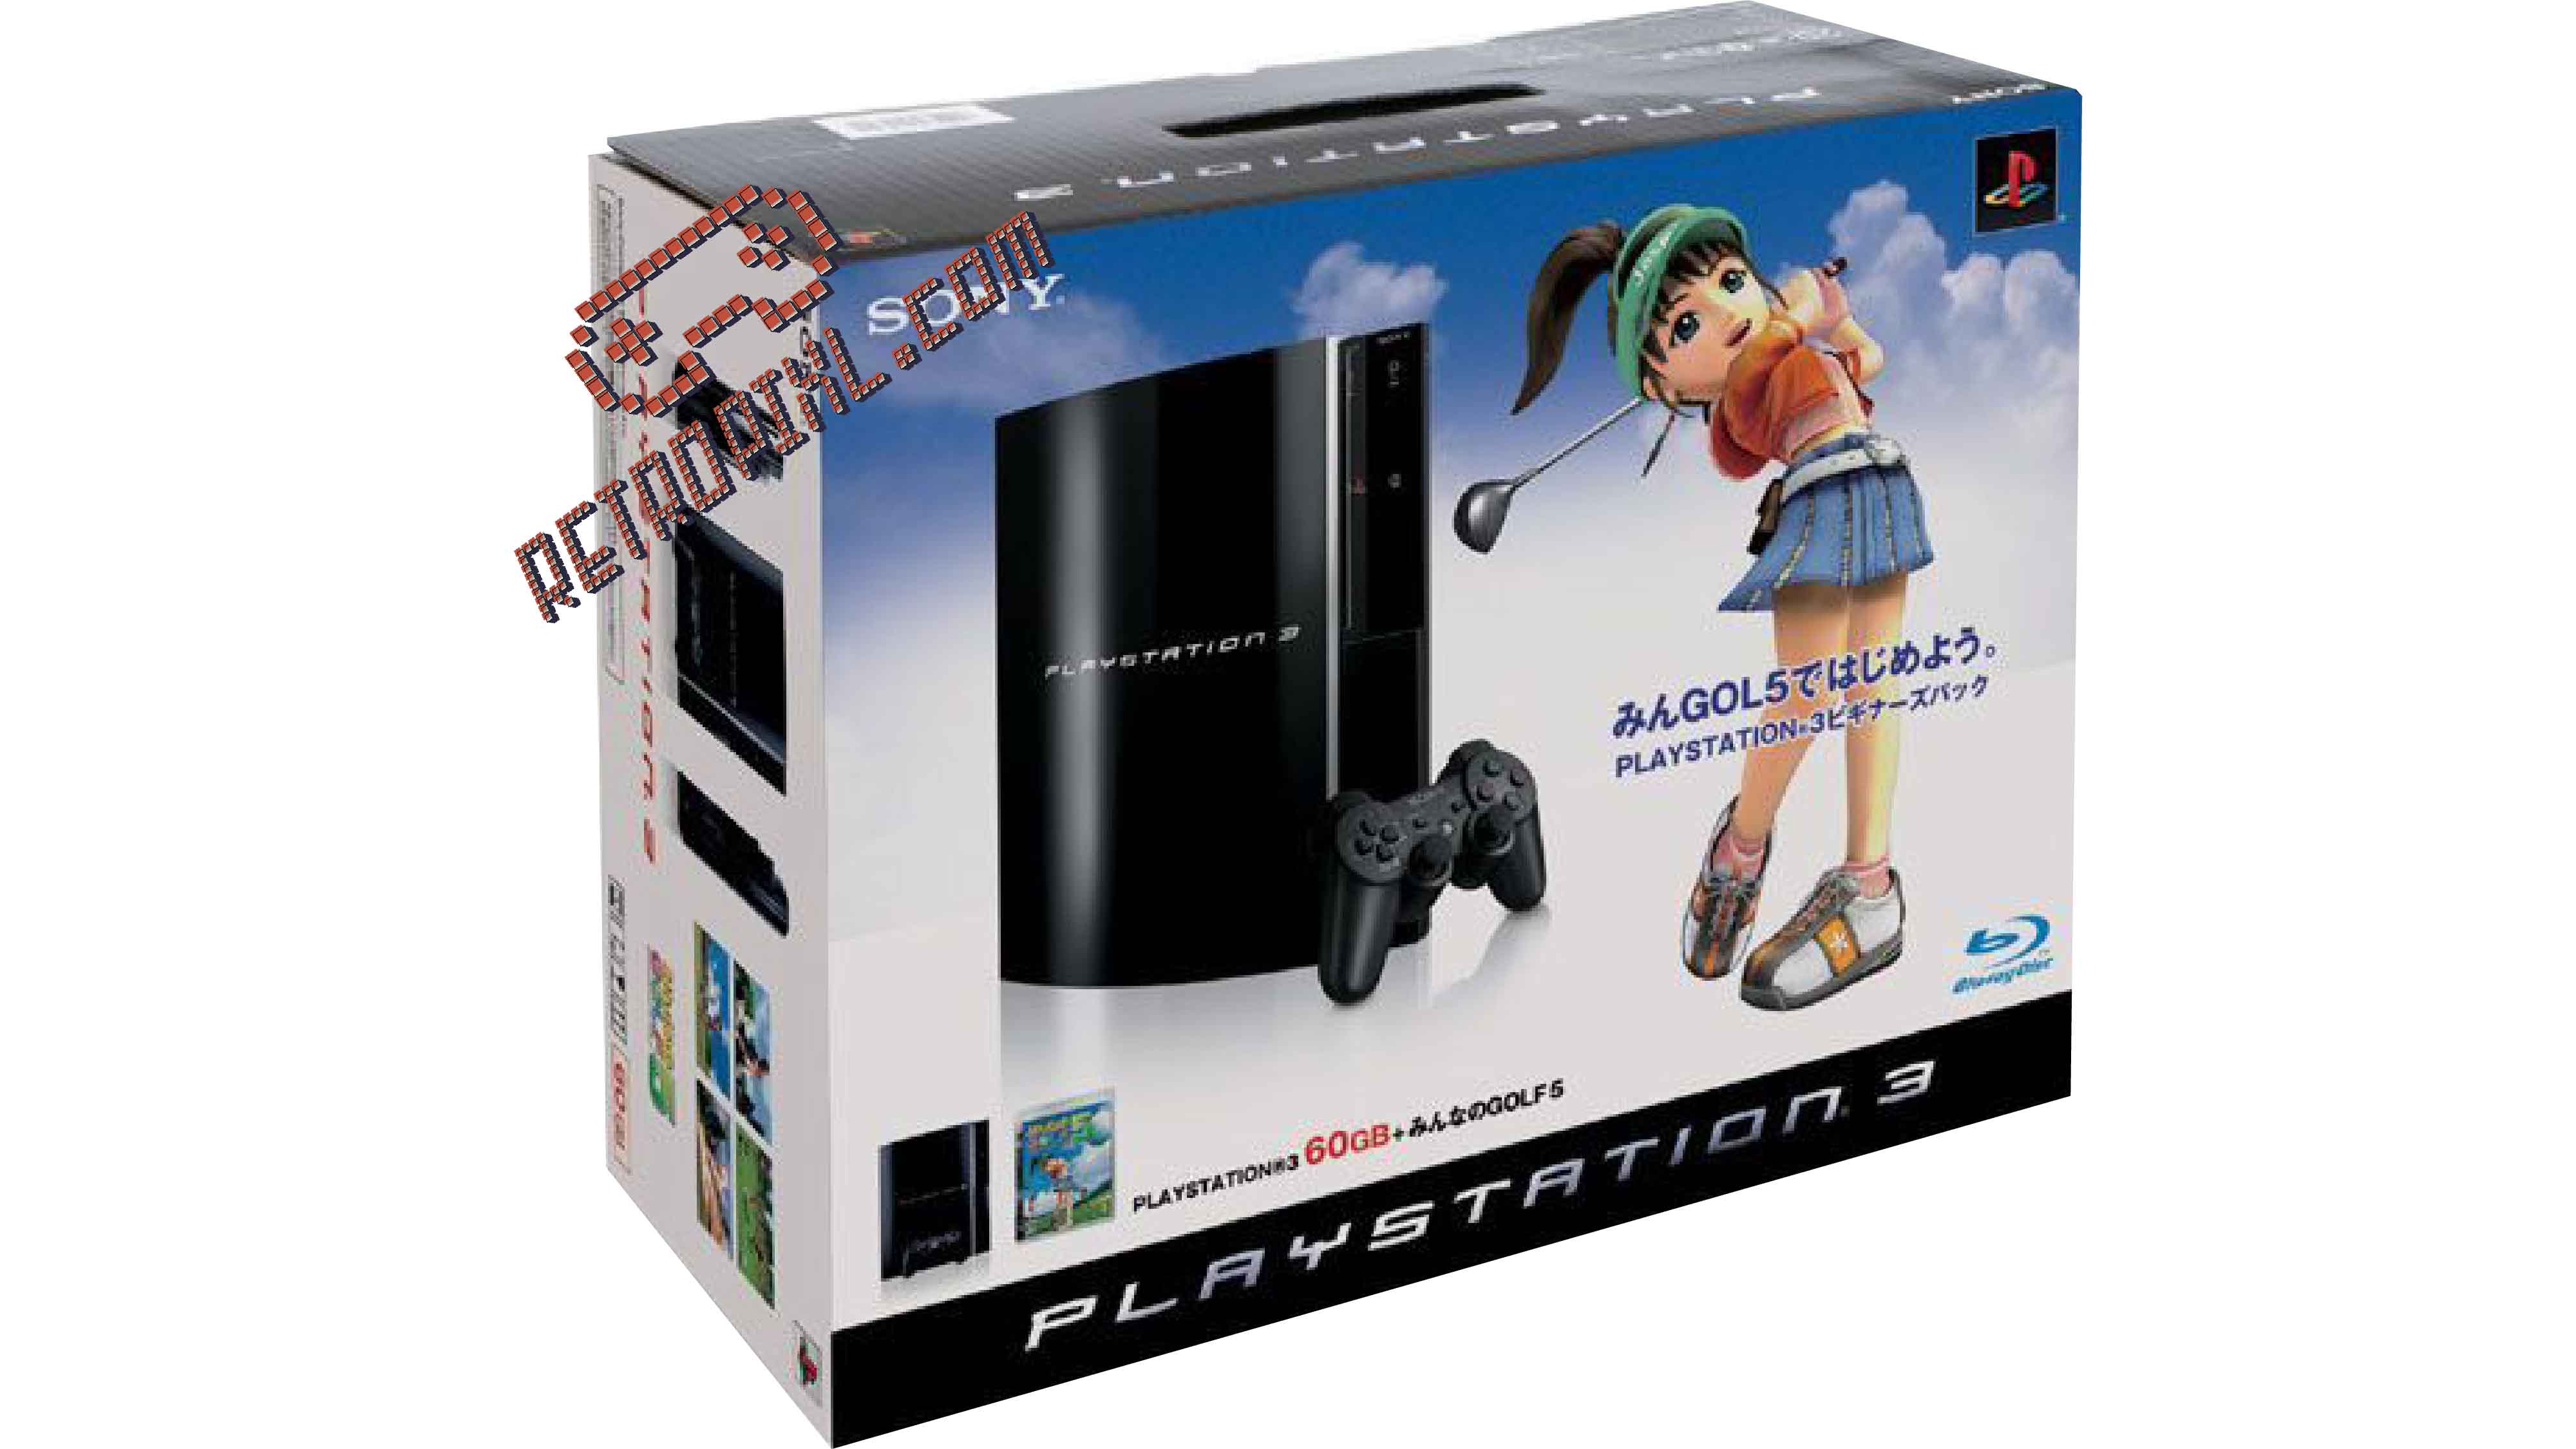  RetroPixl Sony Playstation 3 (PS3) Minna No Golf 5 (Hot Shots) Limited Edition